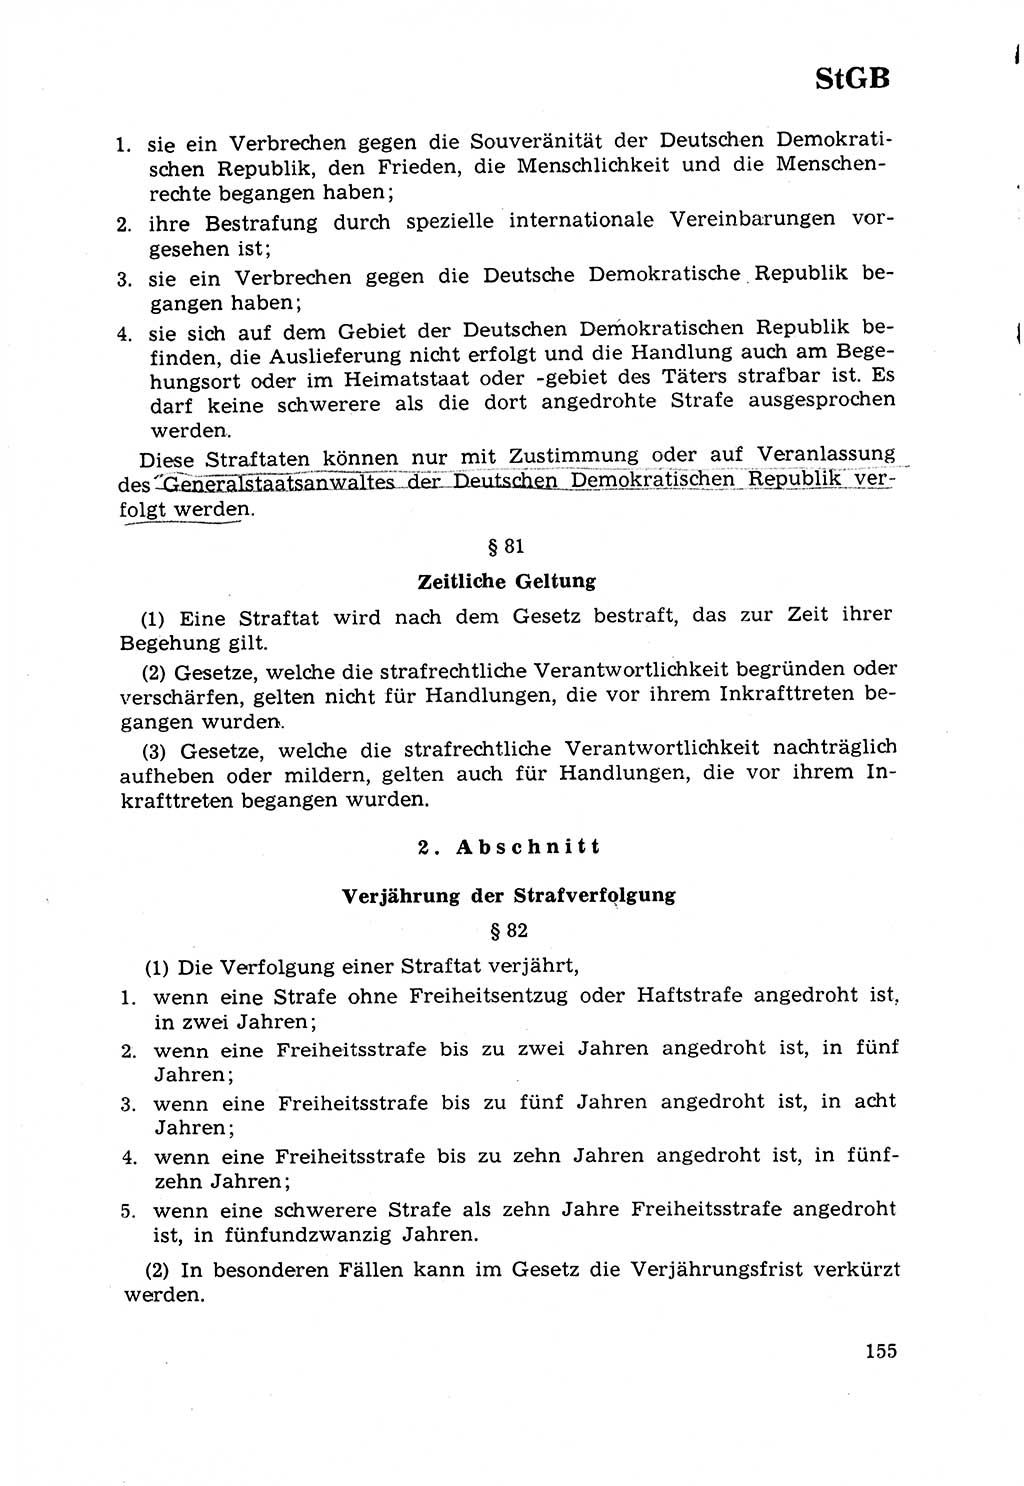 Strafrecht [Deutsche Demokratische Republik (DDR)] 1968, Seite 155 (Strafr. DDR 1968, S. 155)